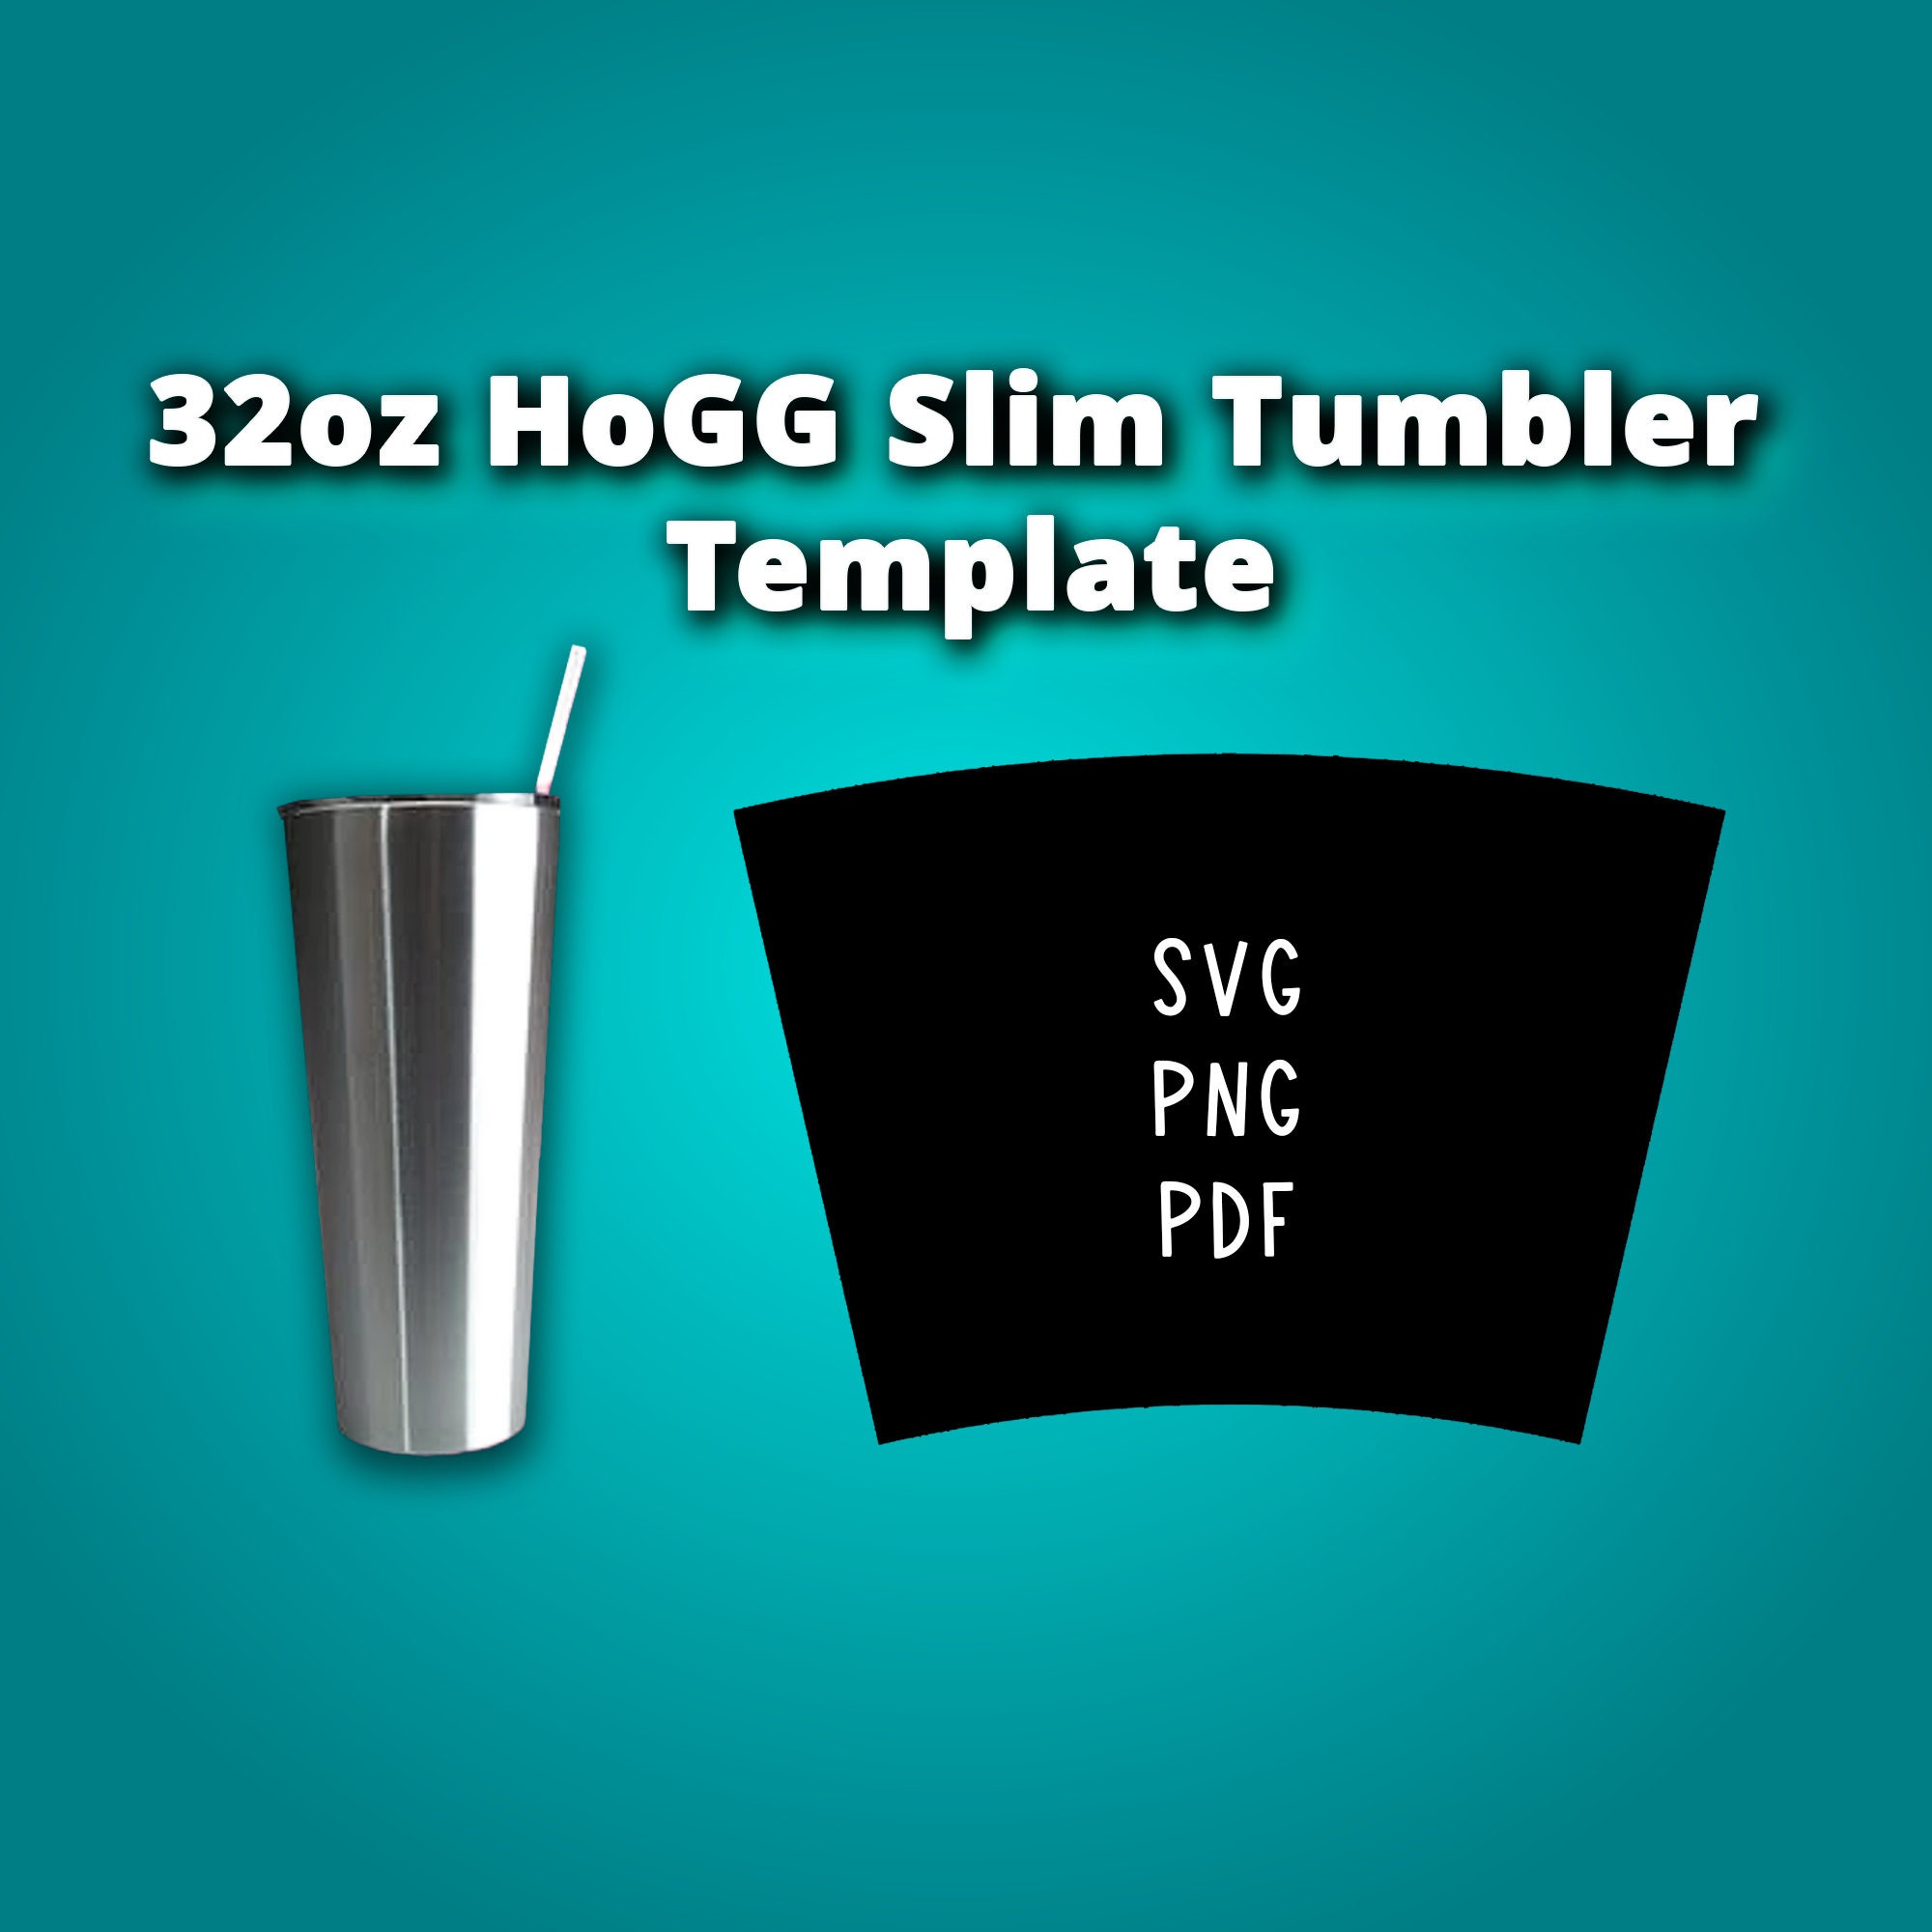 20n Oz Slim Hogg Sublimation Tumbler coffee & Murder 